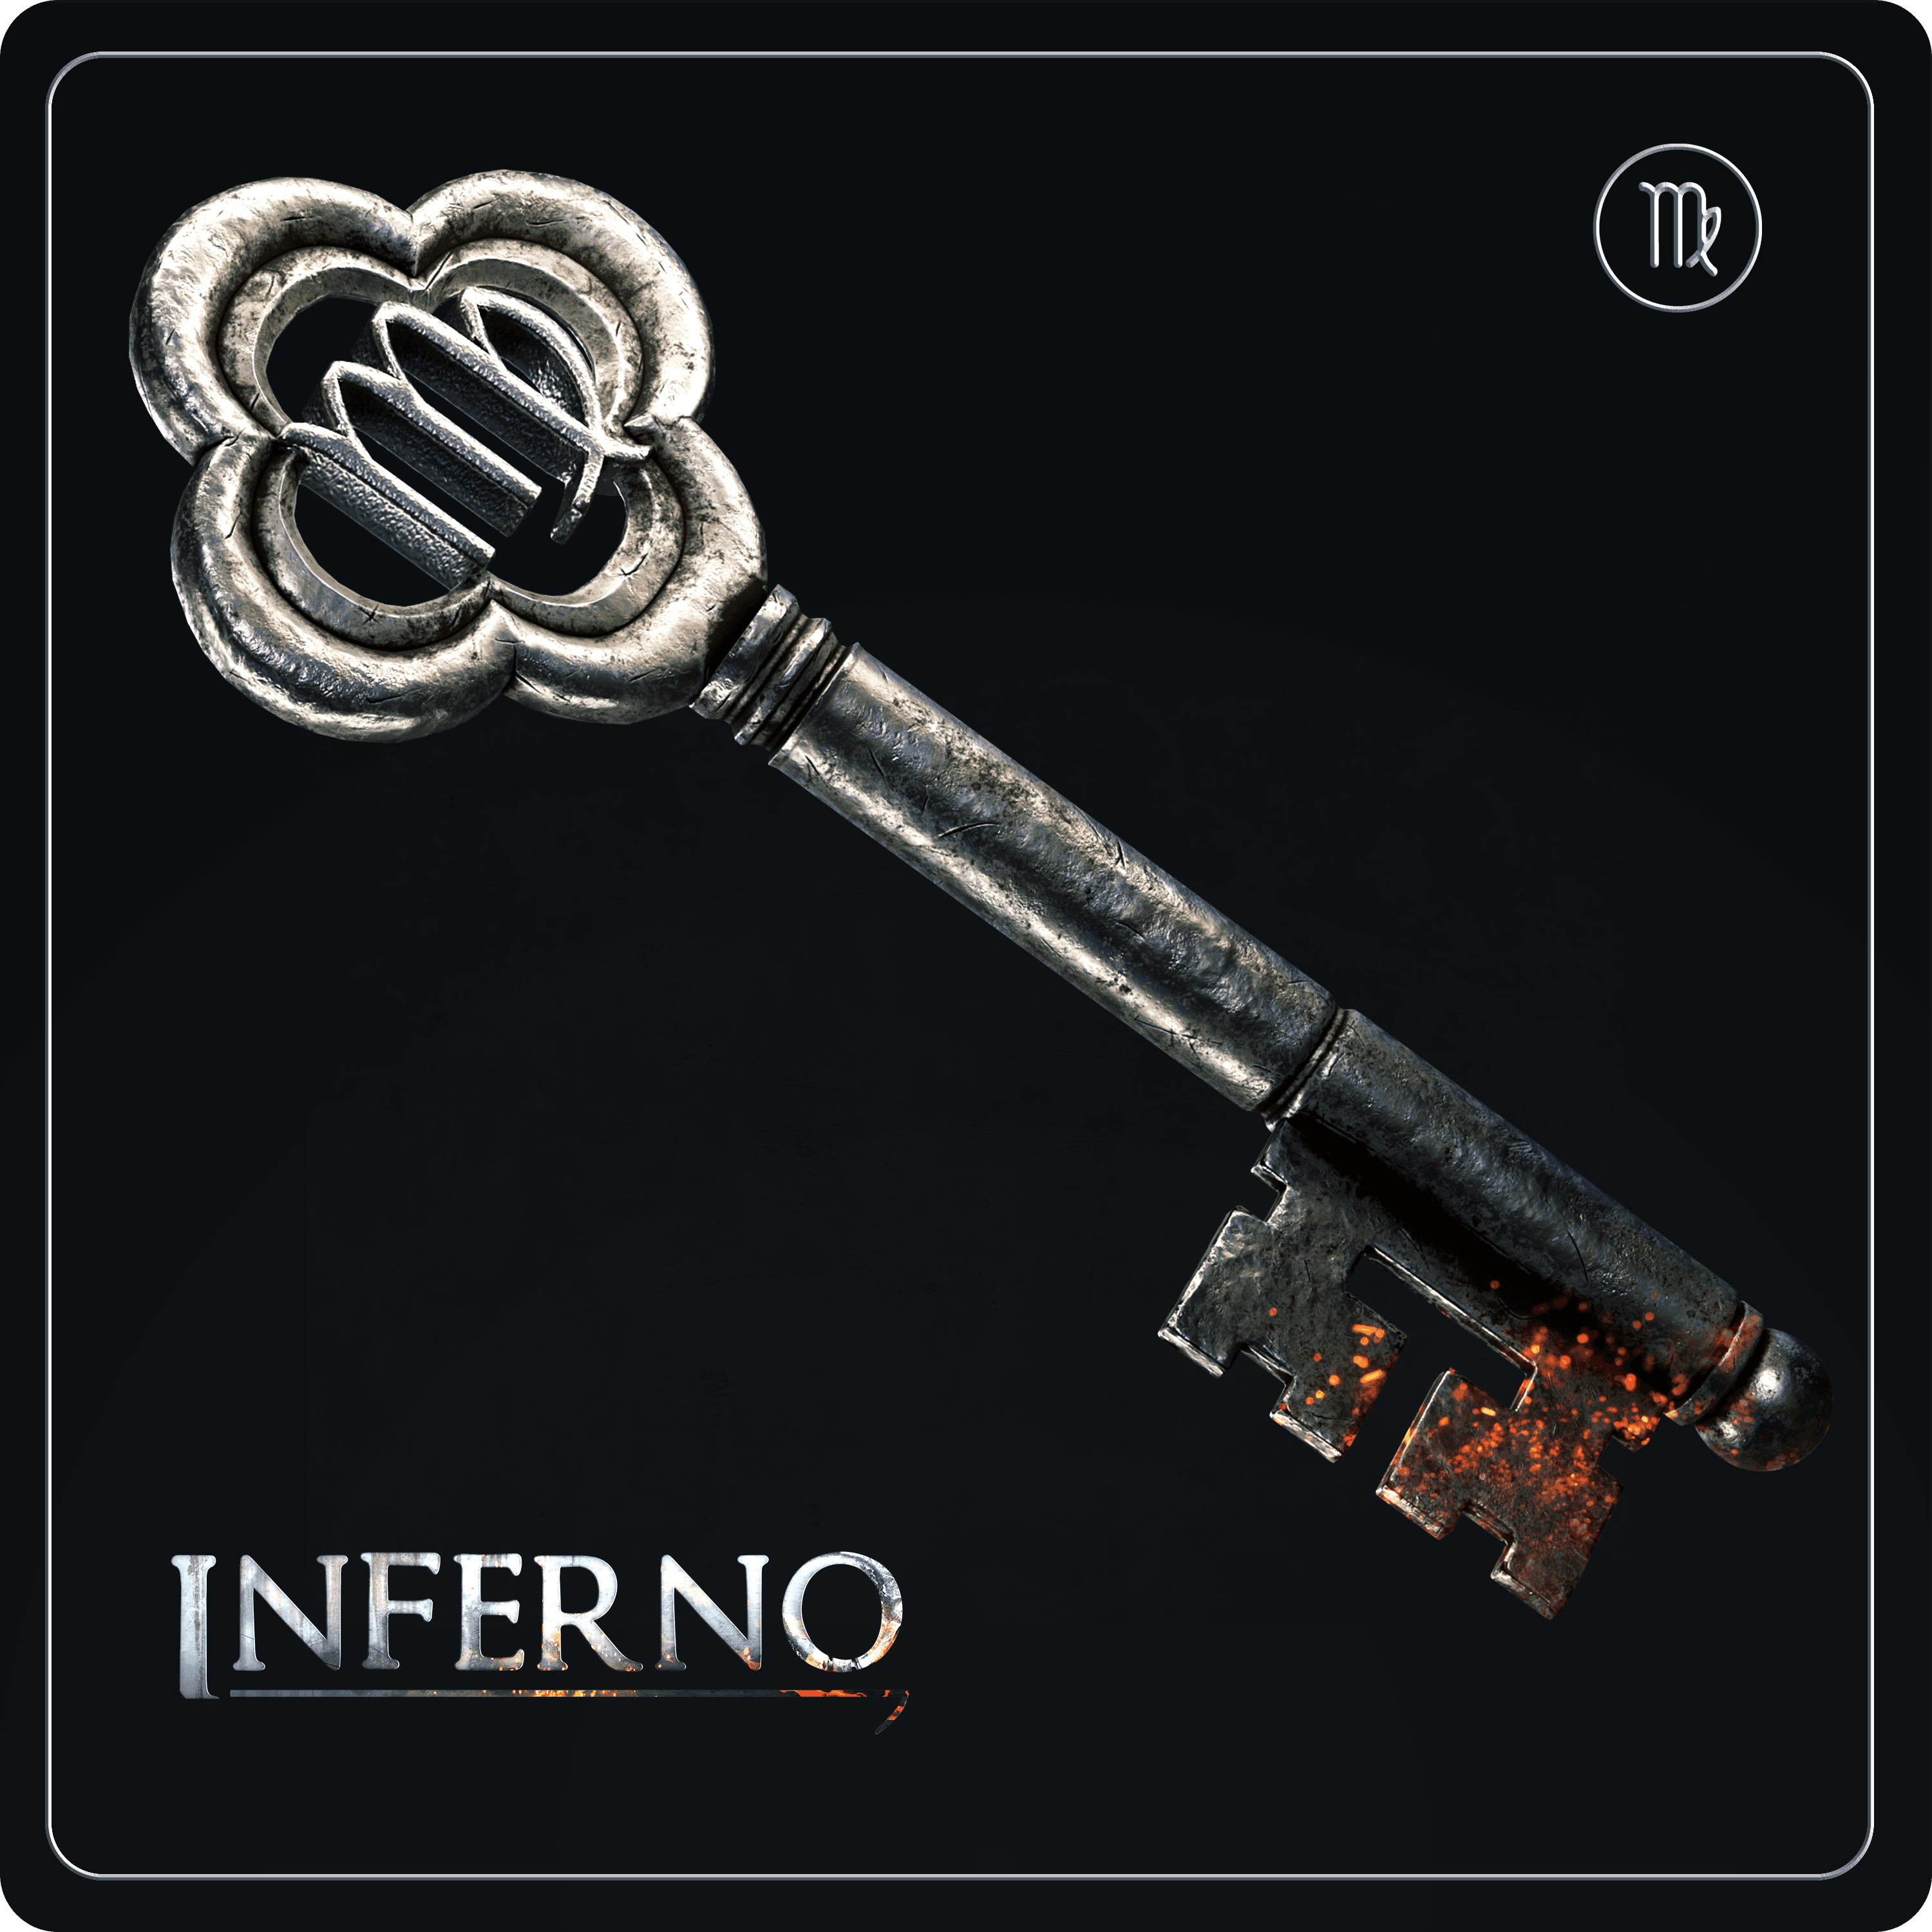 Inferno Key #787